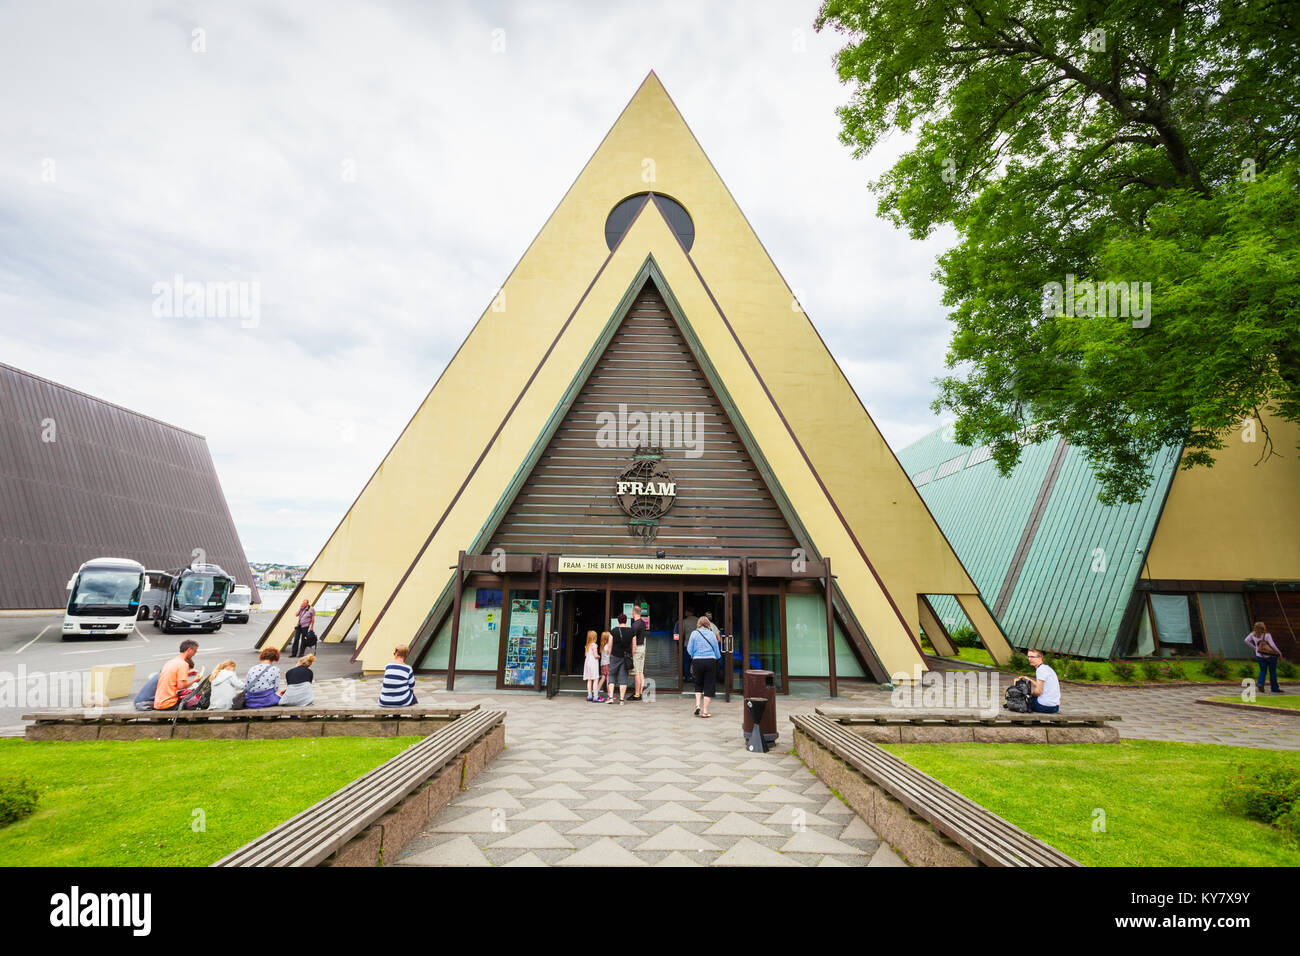 OSLO, Norvège - 21 juillet 2017 : le Musée Fram ou Frammuseet est un musée de l'exploration polaire norvégien. Fram Musée situé sur l'île de Bigdoy à Osl Banque D'Images